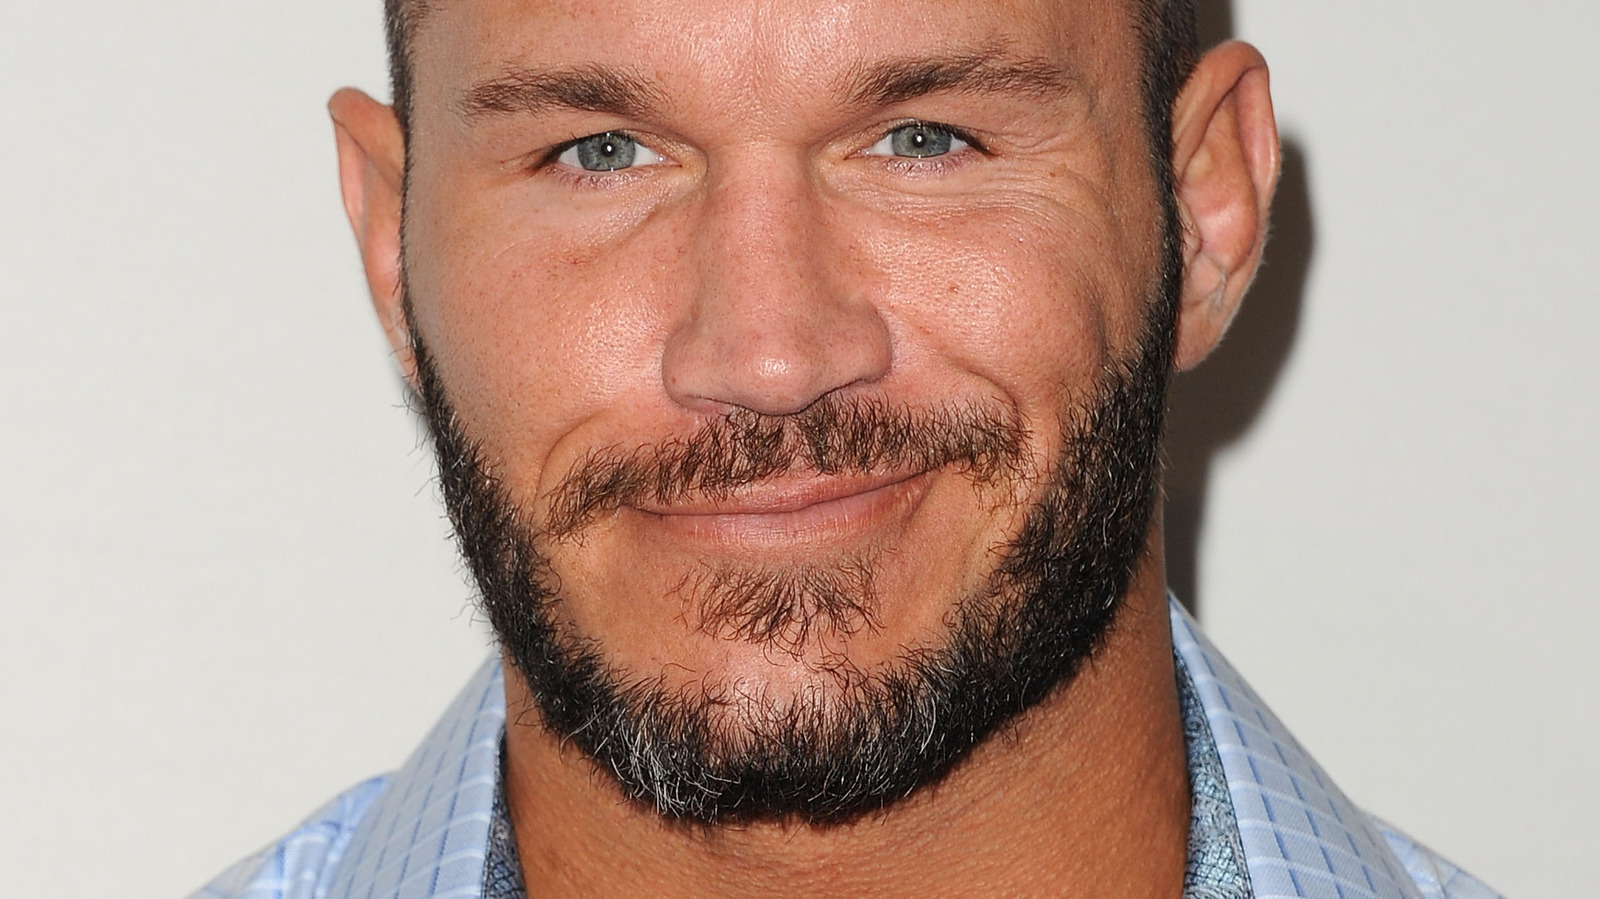 Teddy Long cree que Randy Orton no regresará al ring si los médicos lo desaconsejan